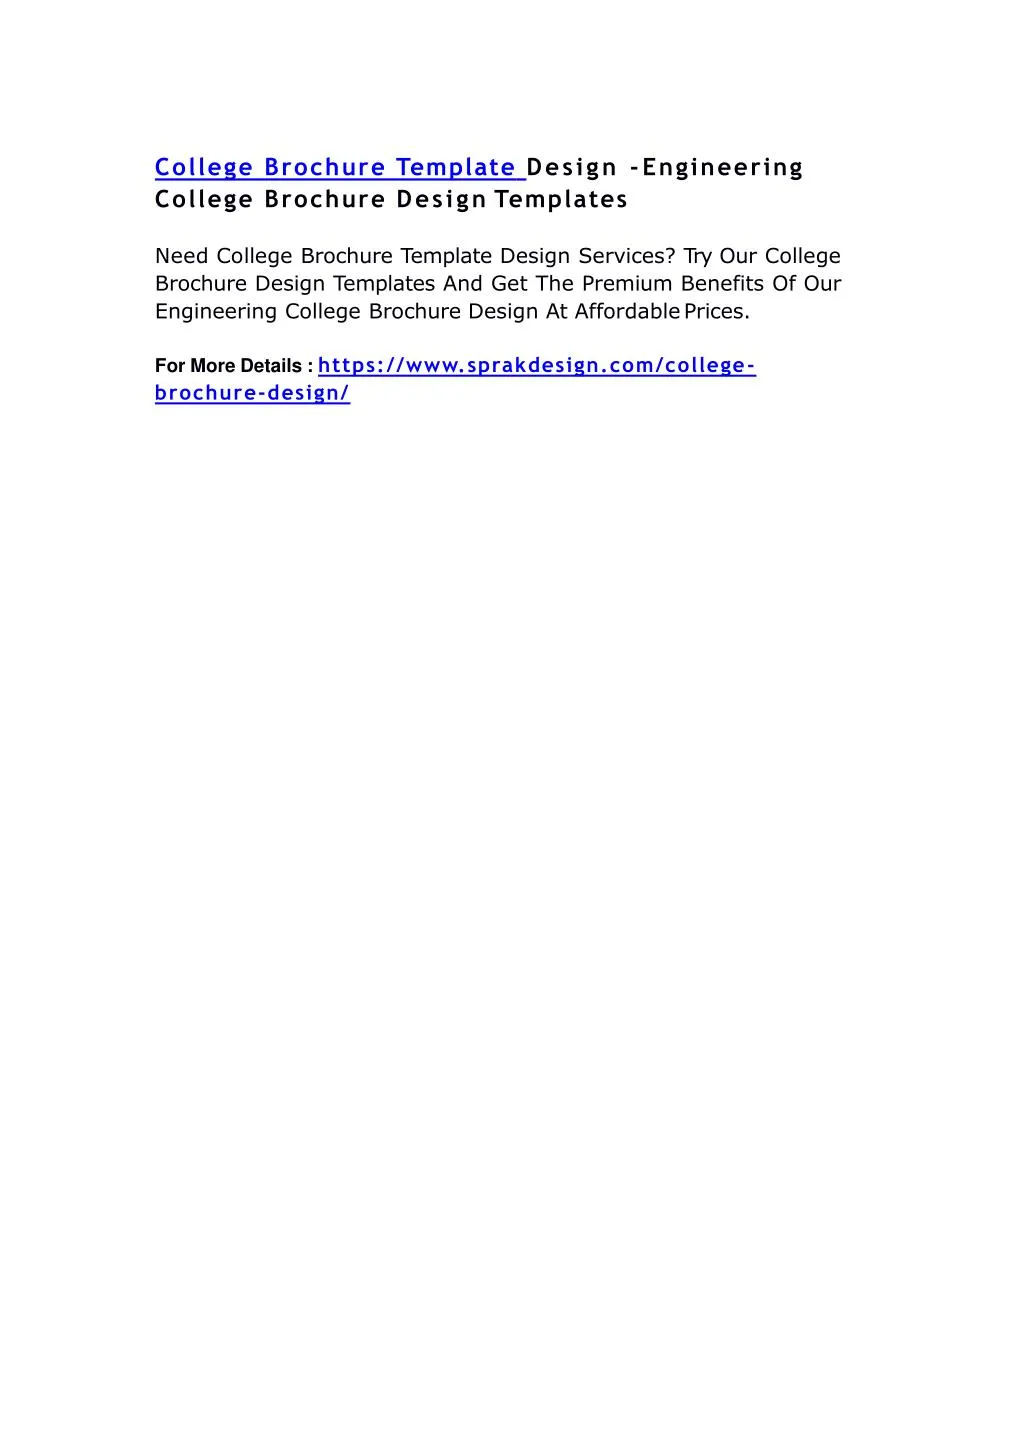 college brochure template design engineering n.